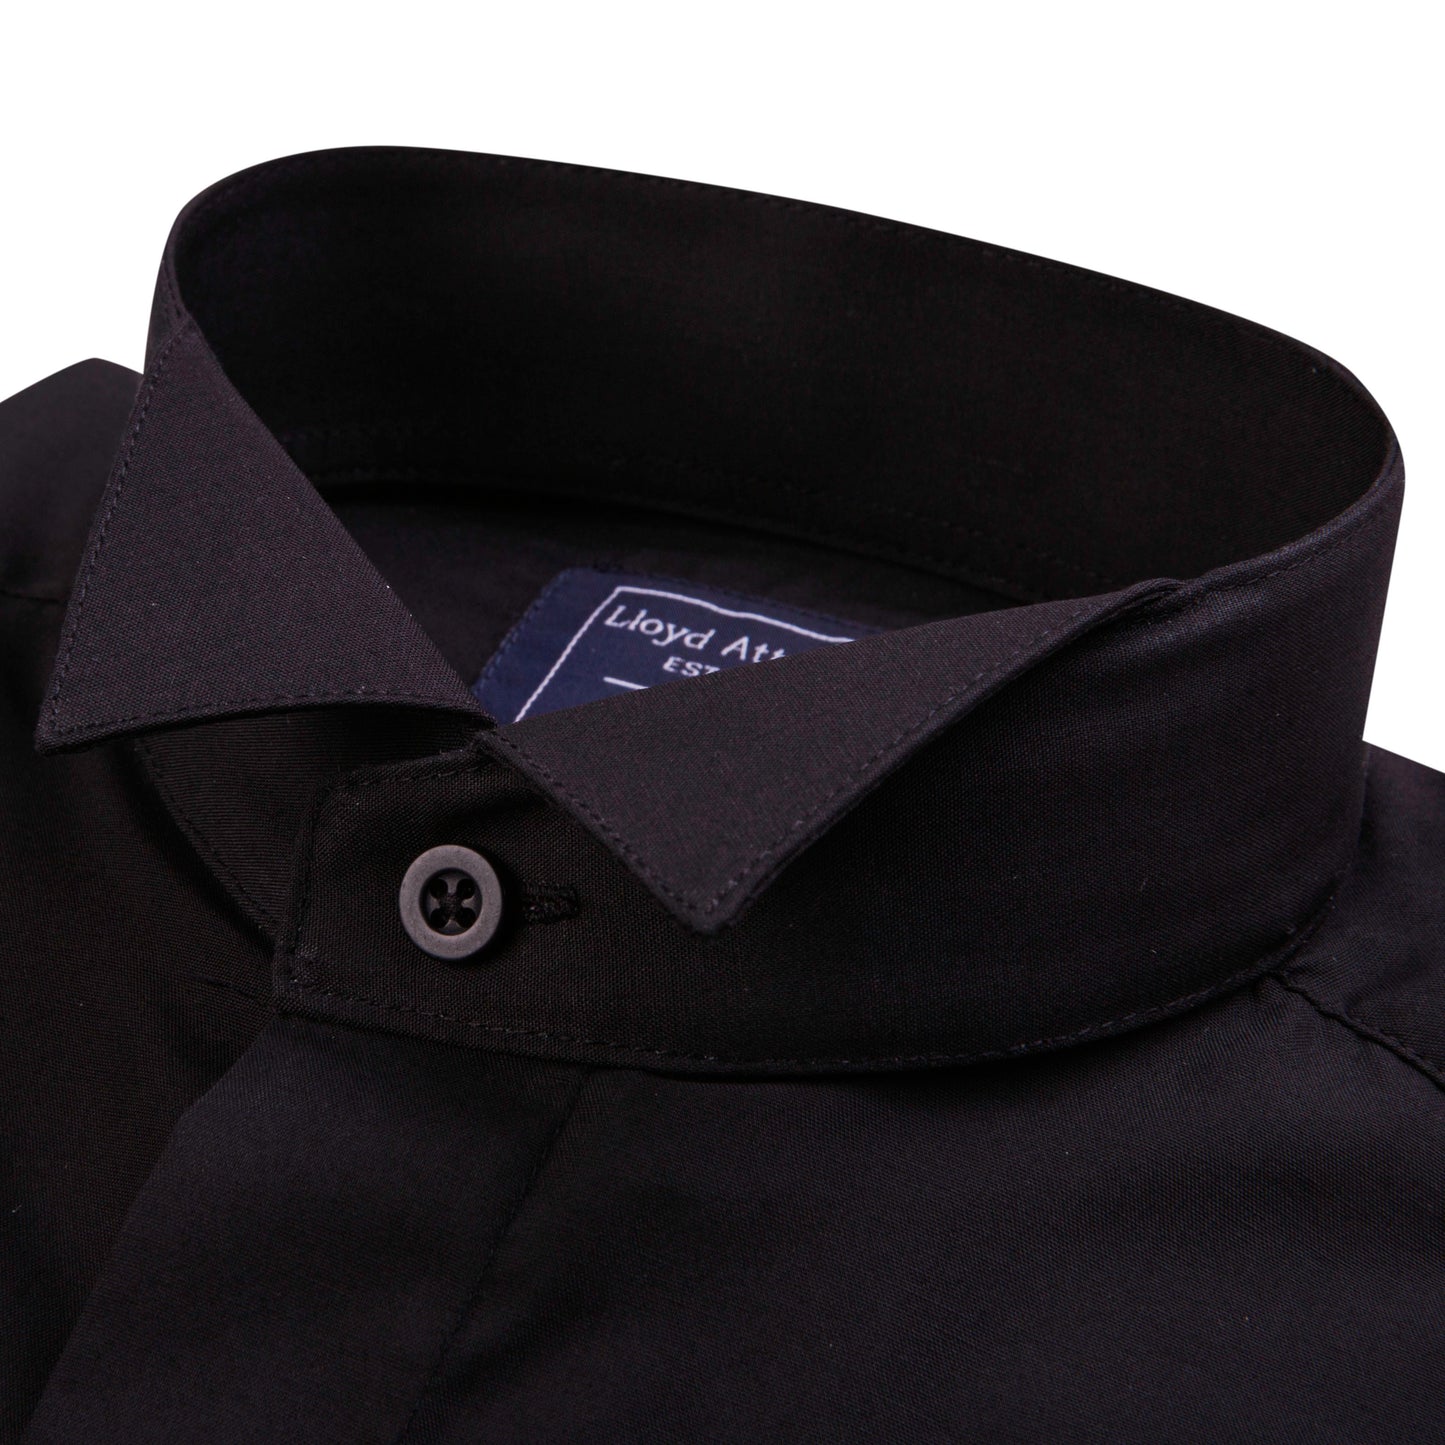 Men's Black Wing Collar Cotton Formal Shirt